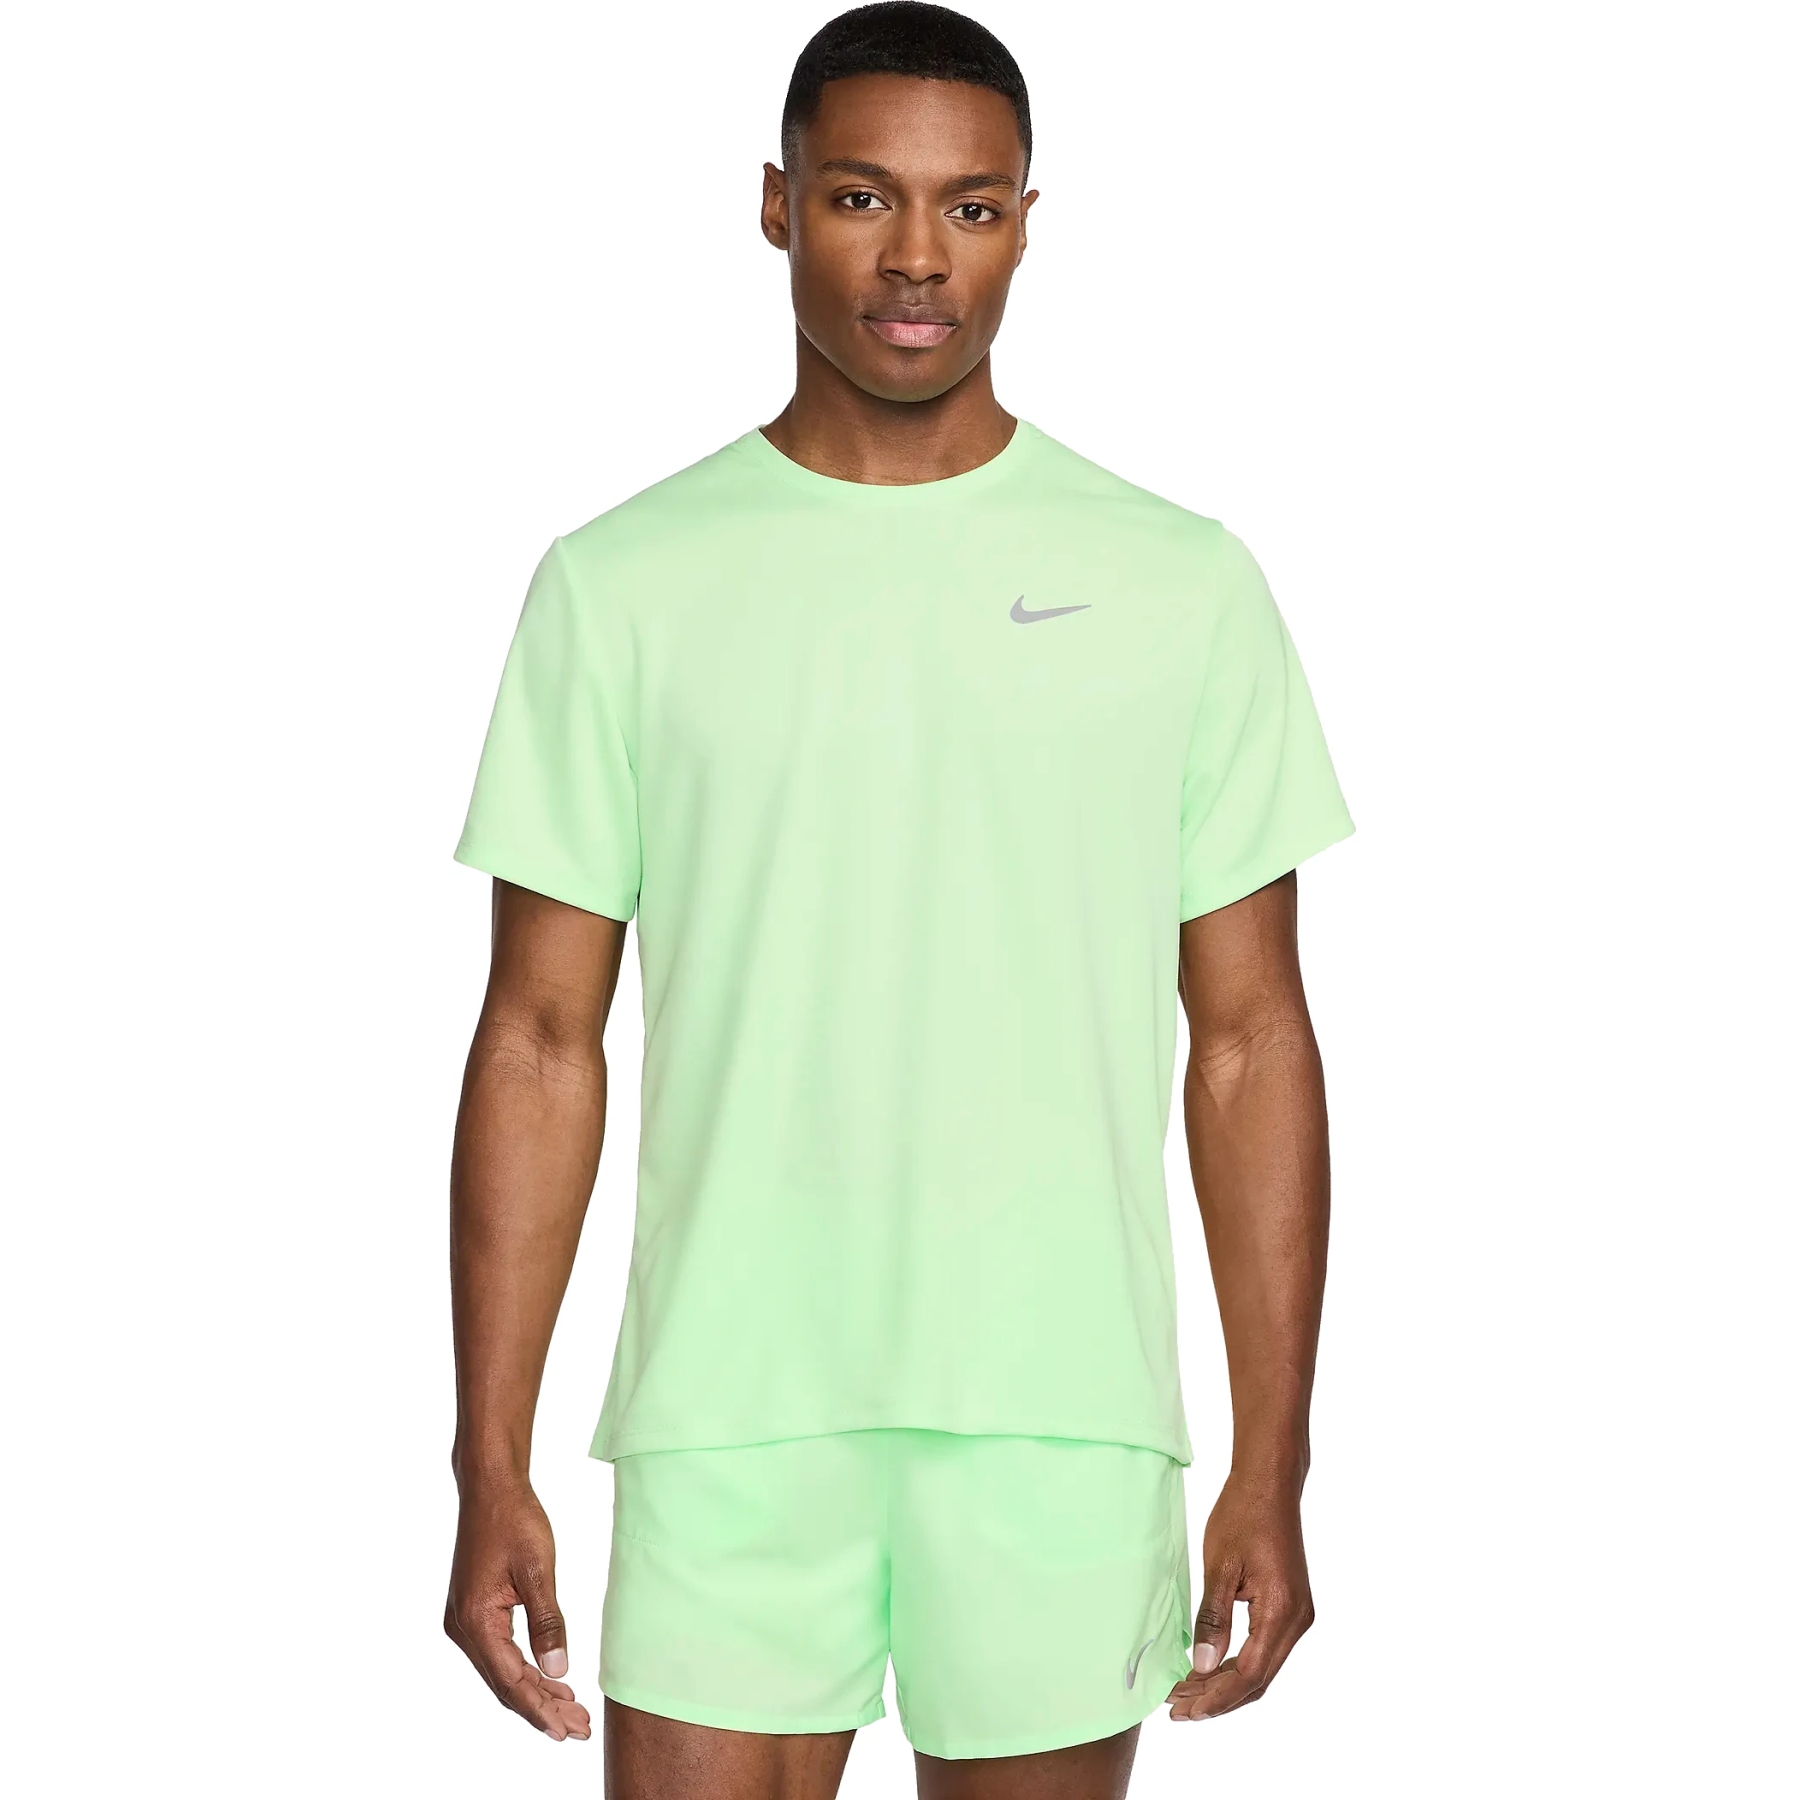 Foto de Nike Camiseta de correr Hombre - Dri-FIT UV Miler Run Division - vapor green/reflective silver DV9315-376